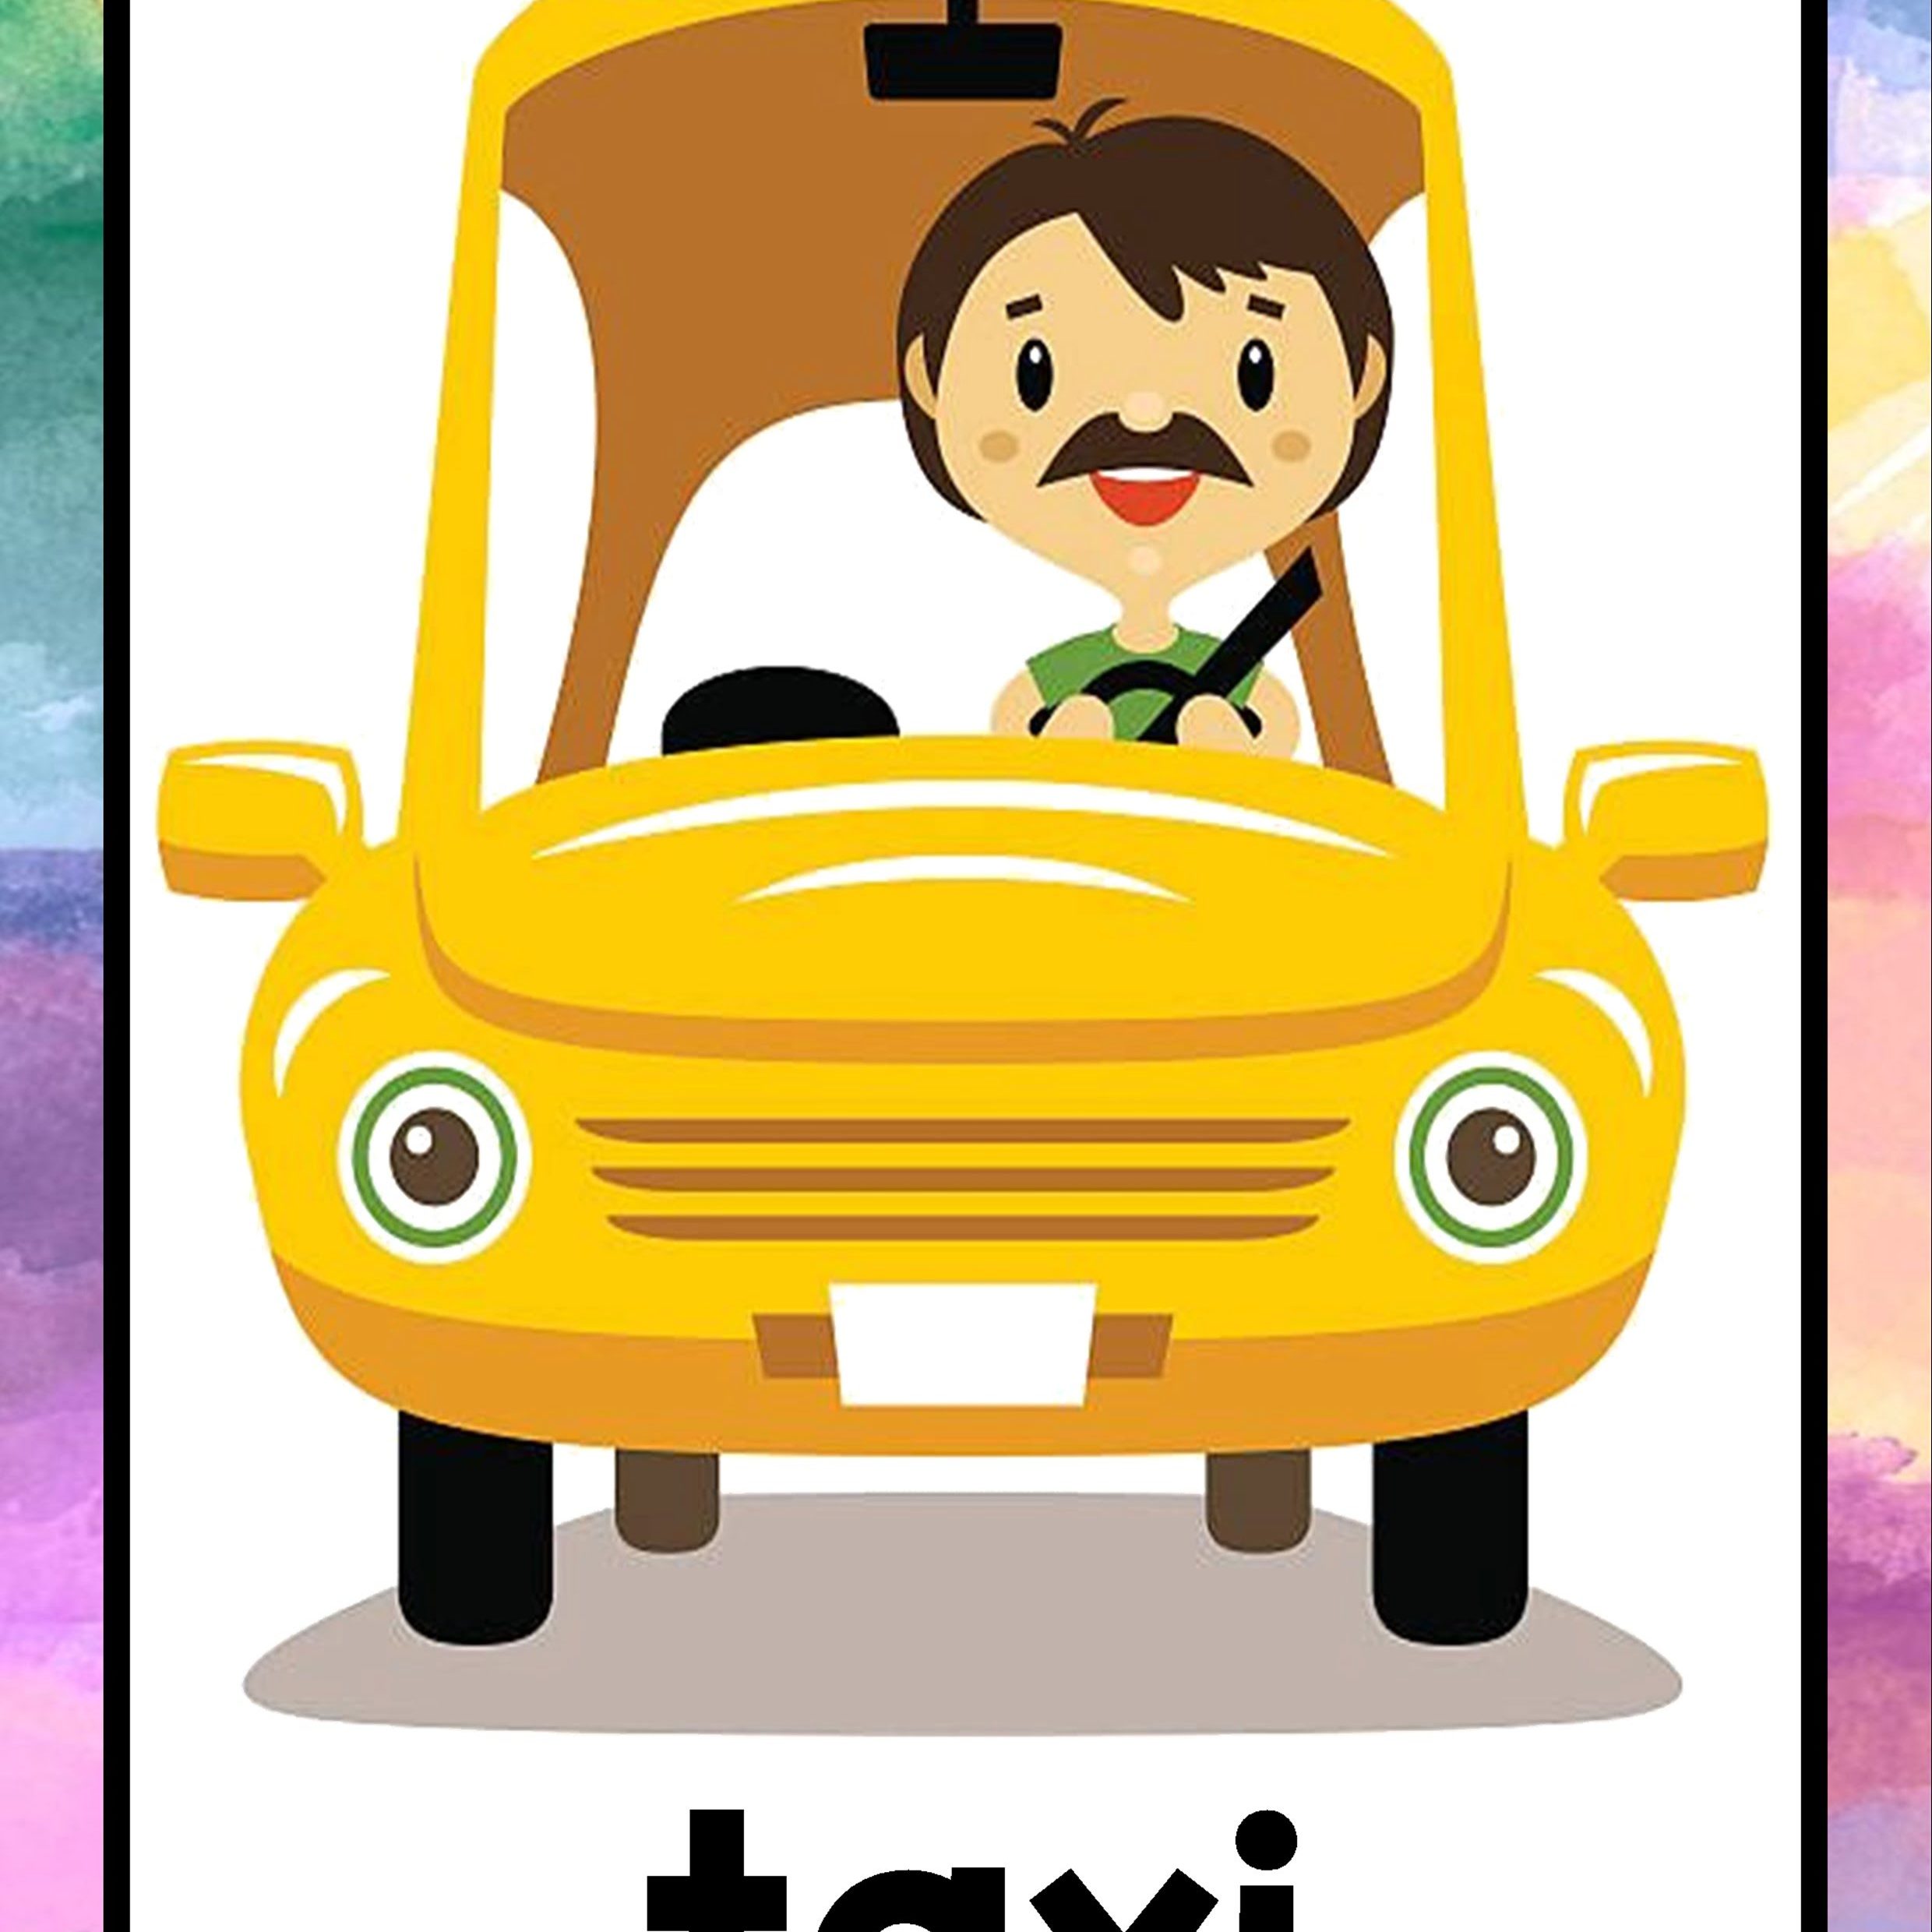 Водитель такси детям